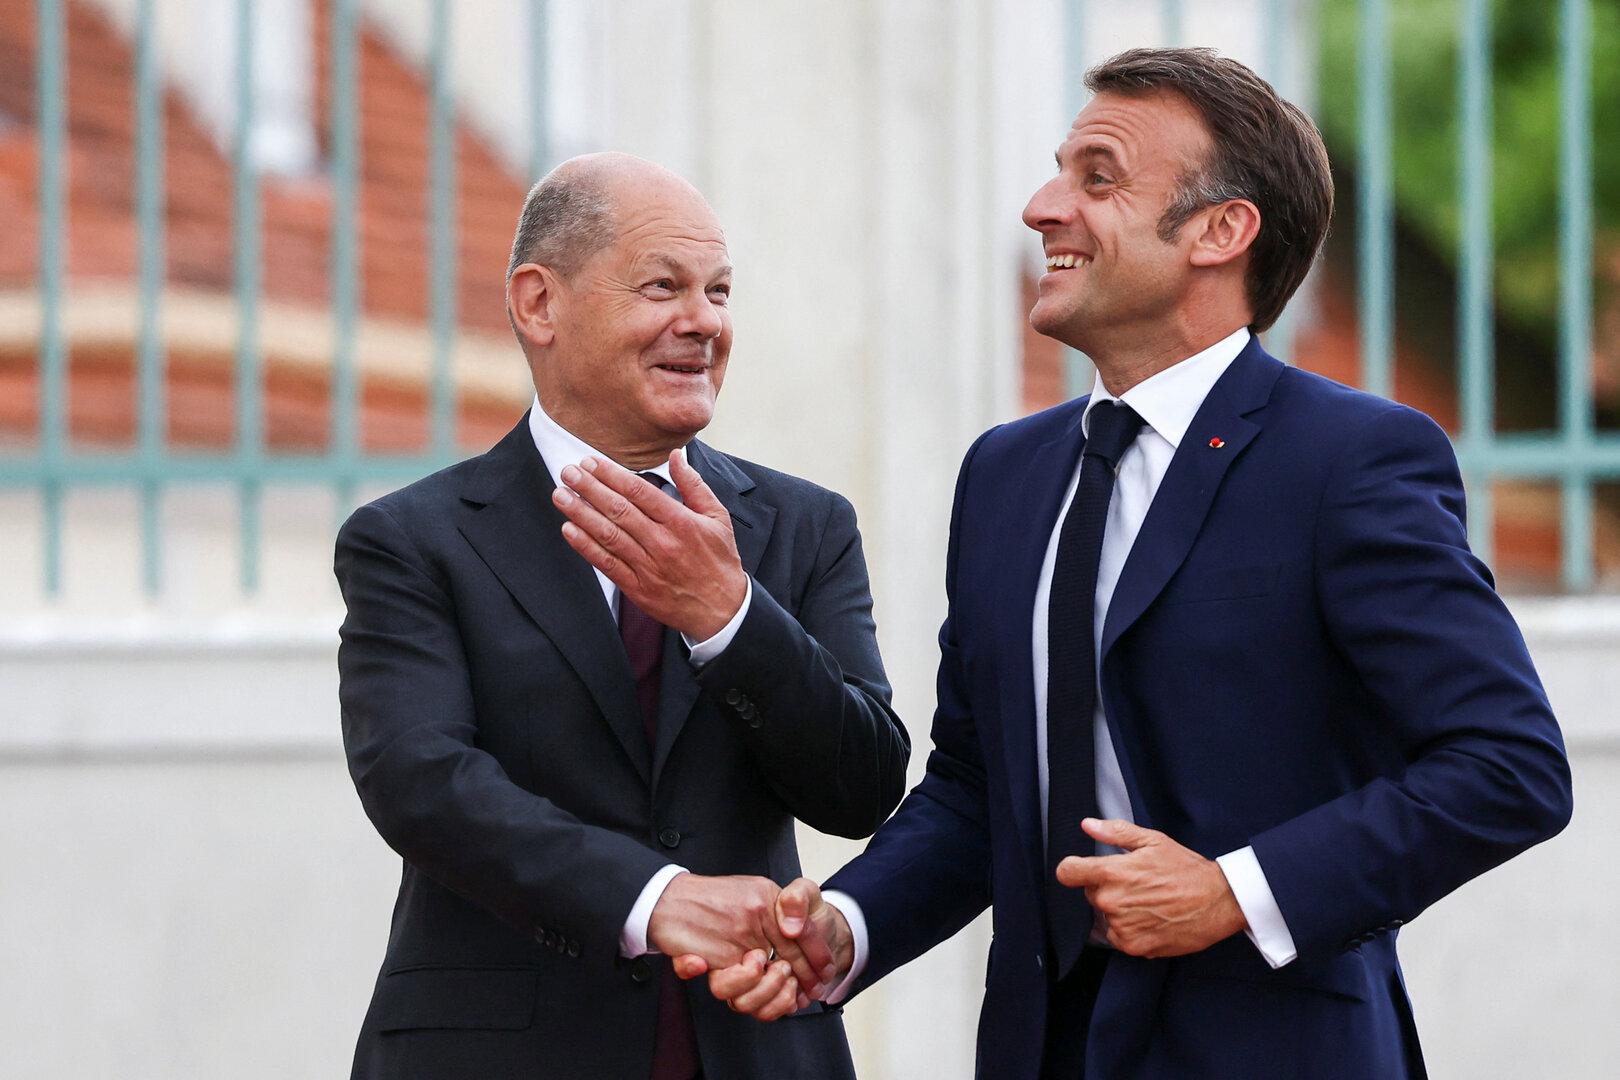 Sie sind mit der Postenbesetzung zufrieden: Der Sozialdemokrat Olaf Scholz und der Liberale Emmanuel Macron.